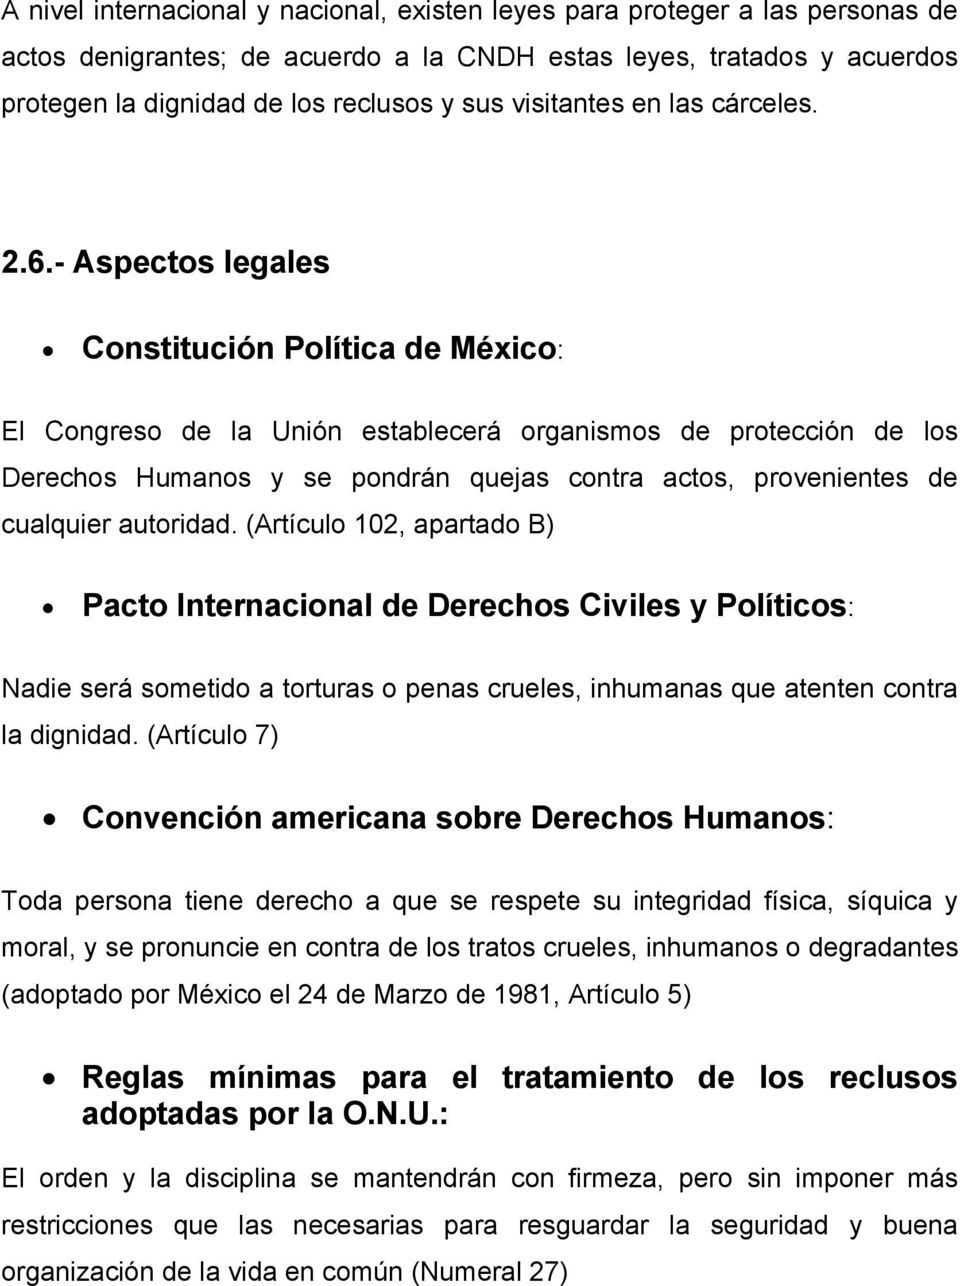 - Aspectos legales Constitución Política de México: El Congreso de la Unión establecerá organismos de protección de los Derechos Humanos y se pondrán quejas contra actos, provenientes de cualquier